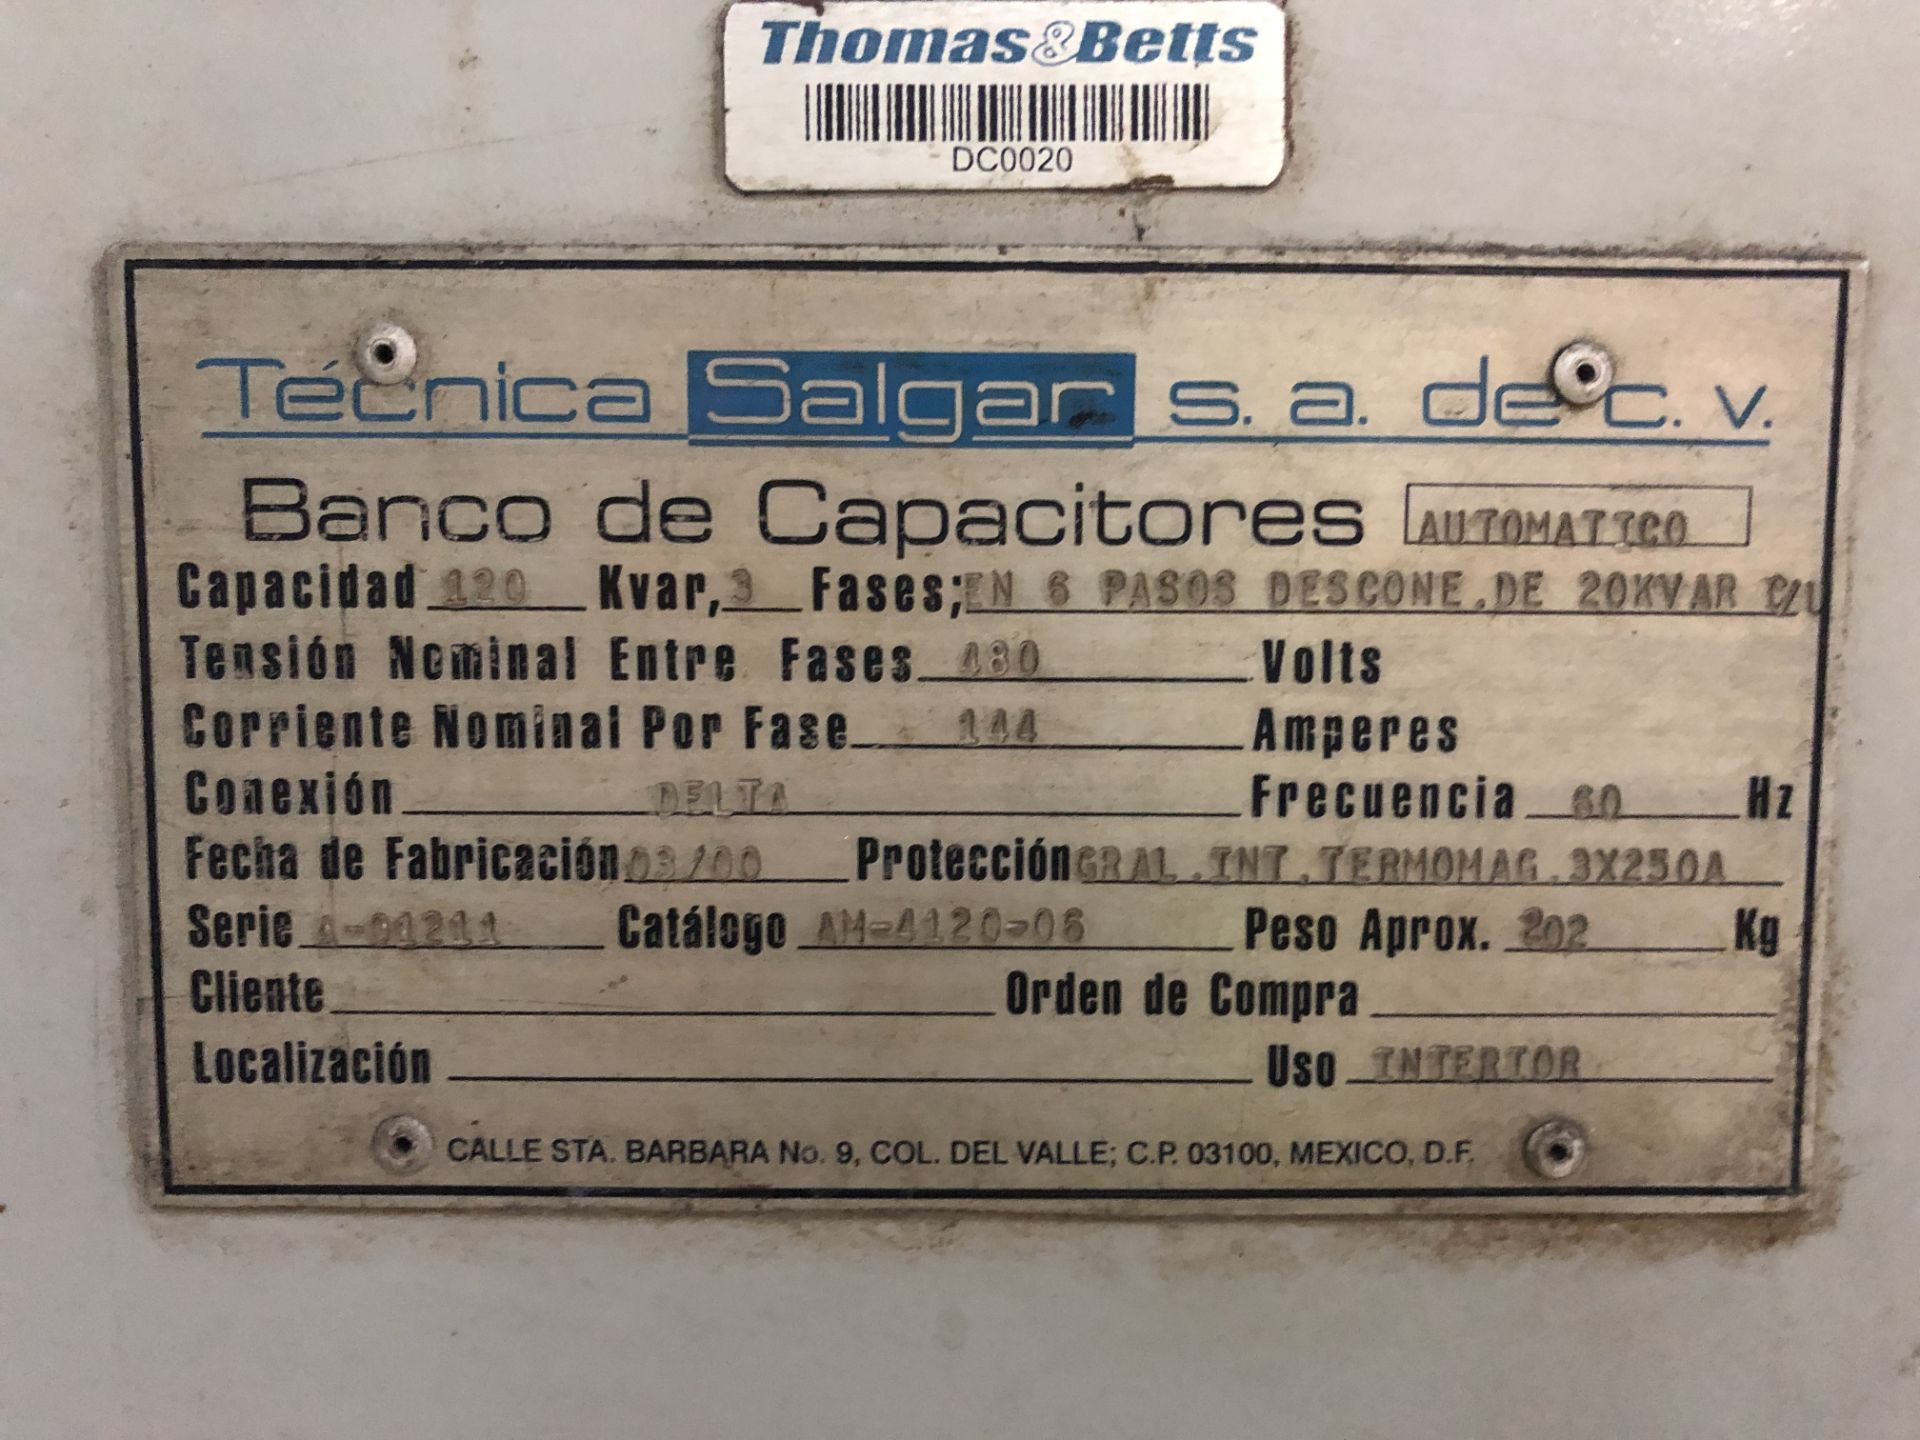 SALGAR Capacitors Bank, Capacity 120 K var, BY Phase 144 APM / Banco de Capacitores - Image 3 of 3